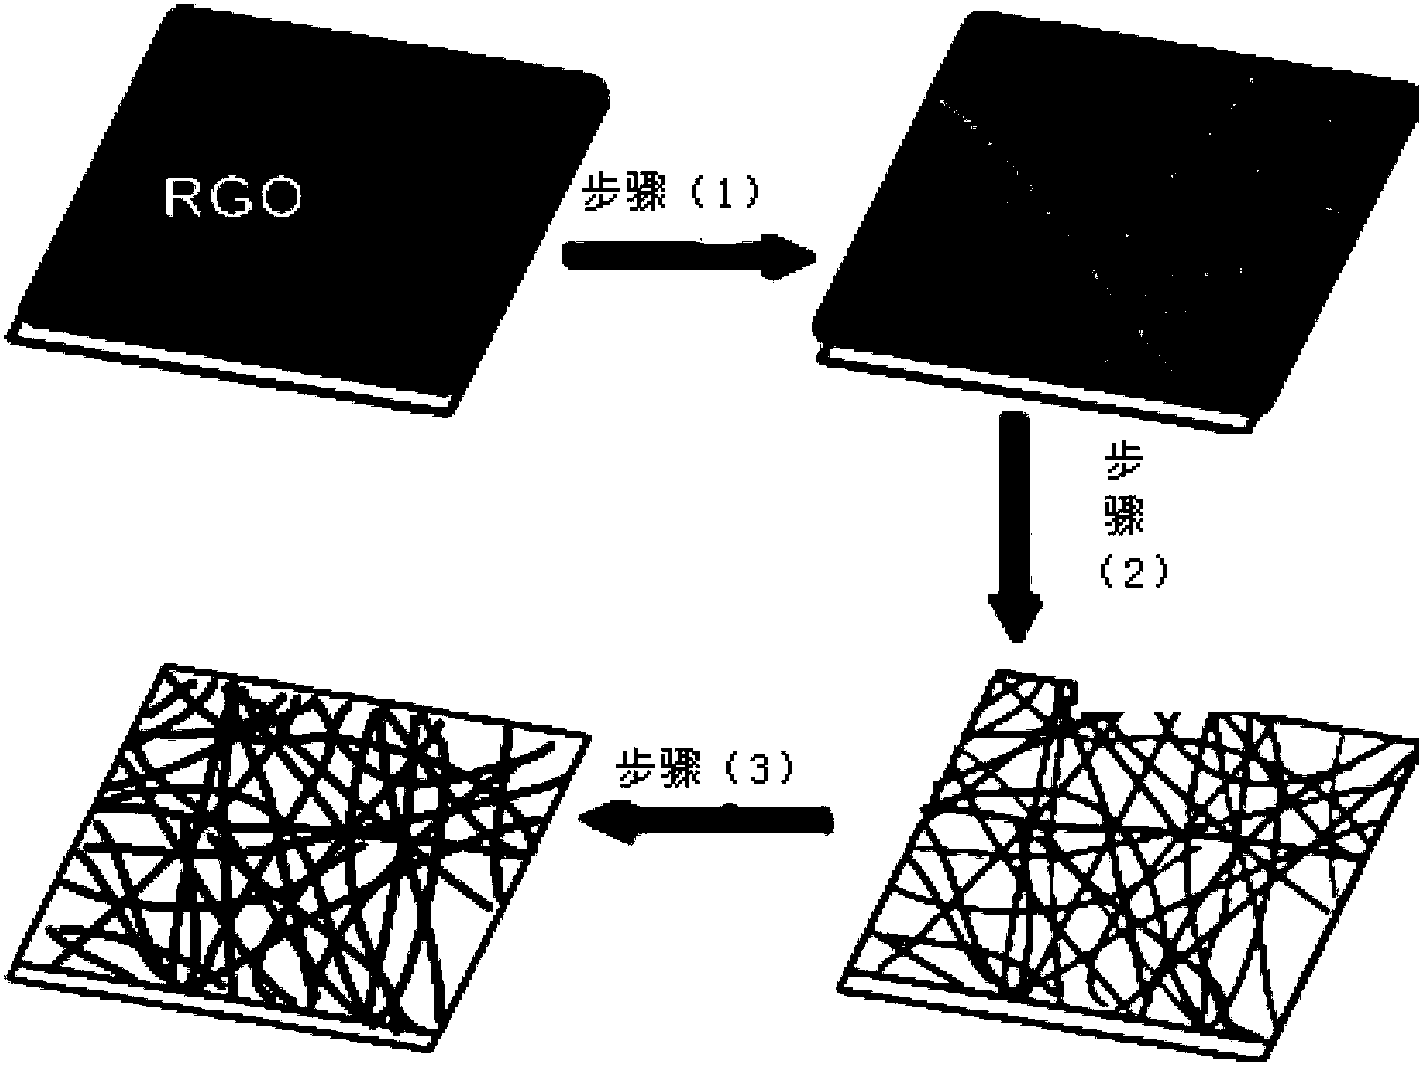 Graphene nano-belts, preparation method of graphene nano-belts, and application of graphene nano-belts in transparent electrodes